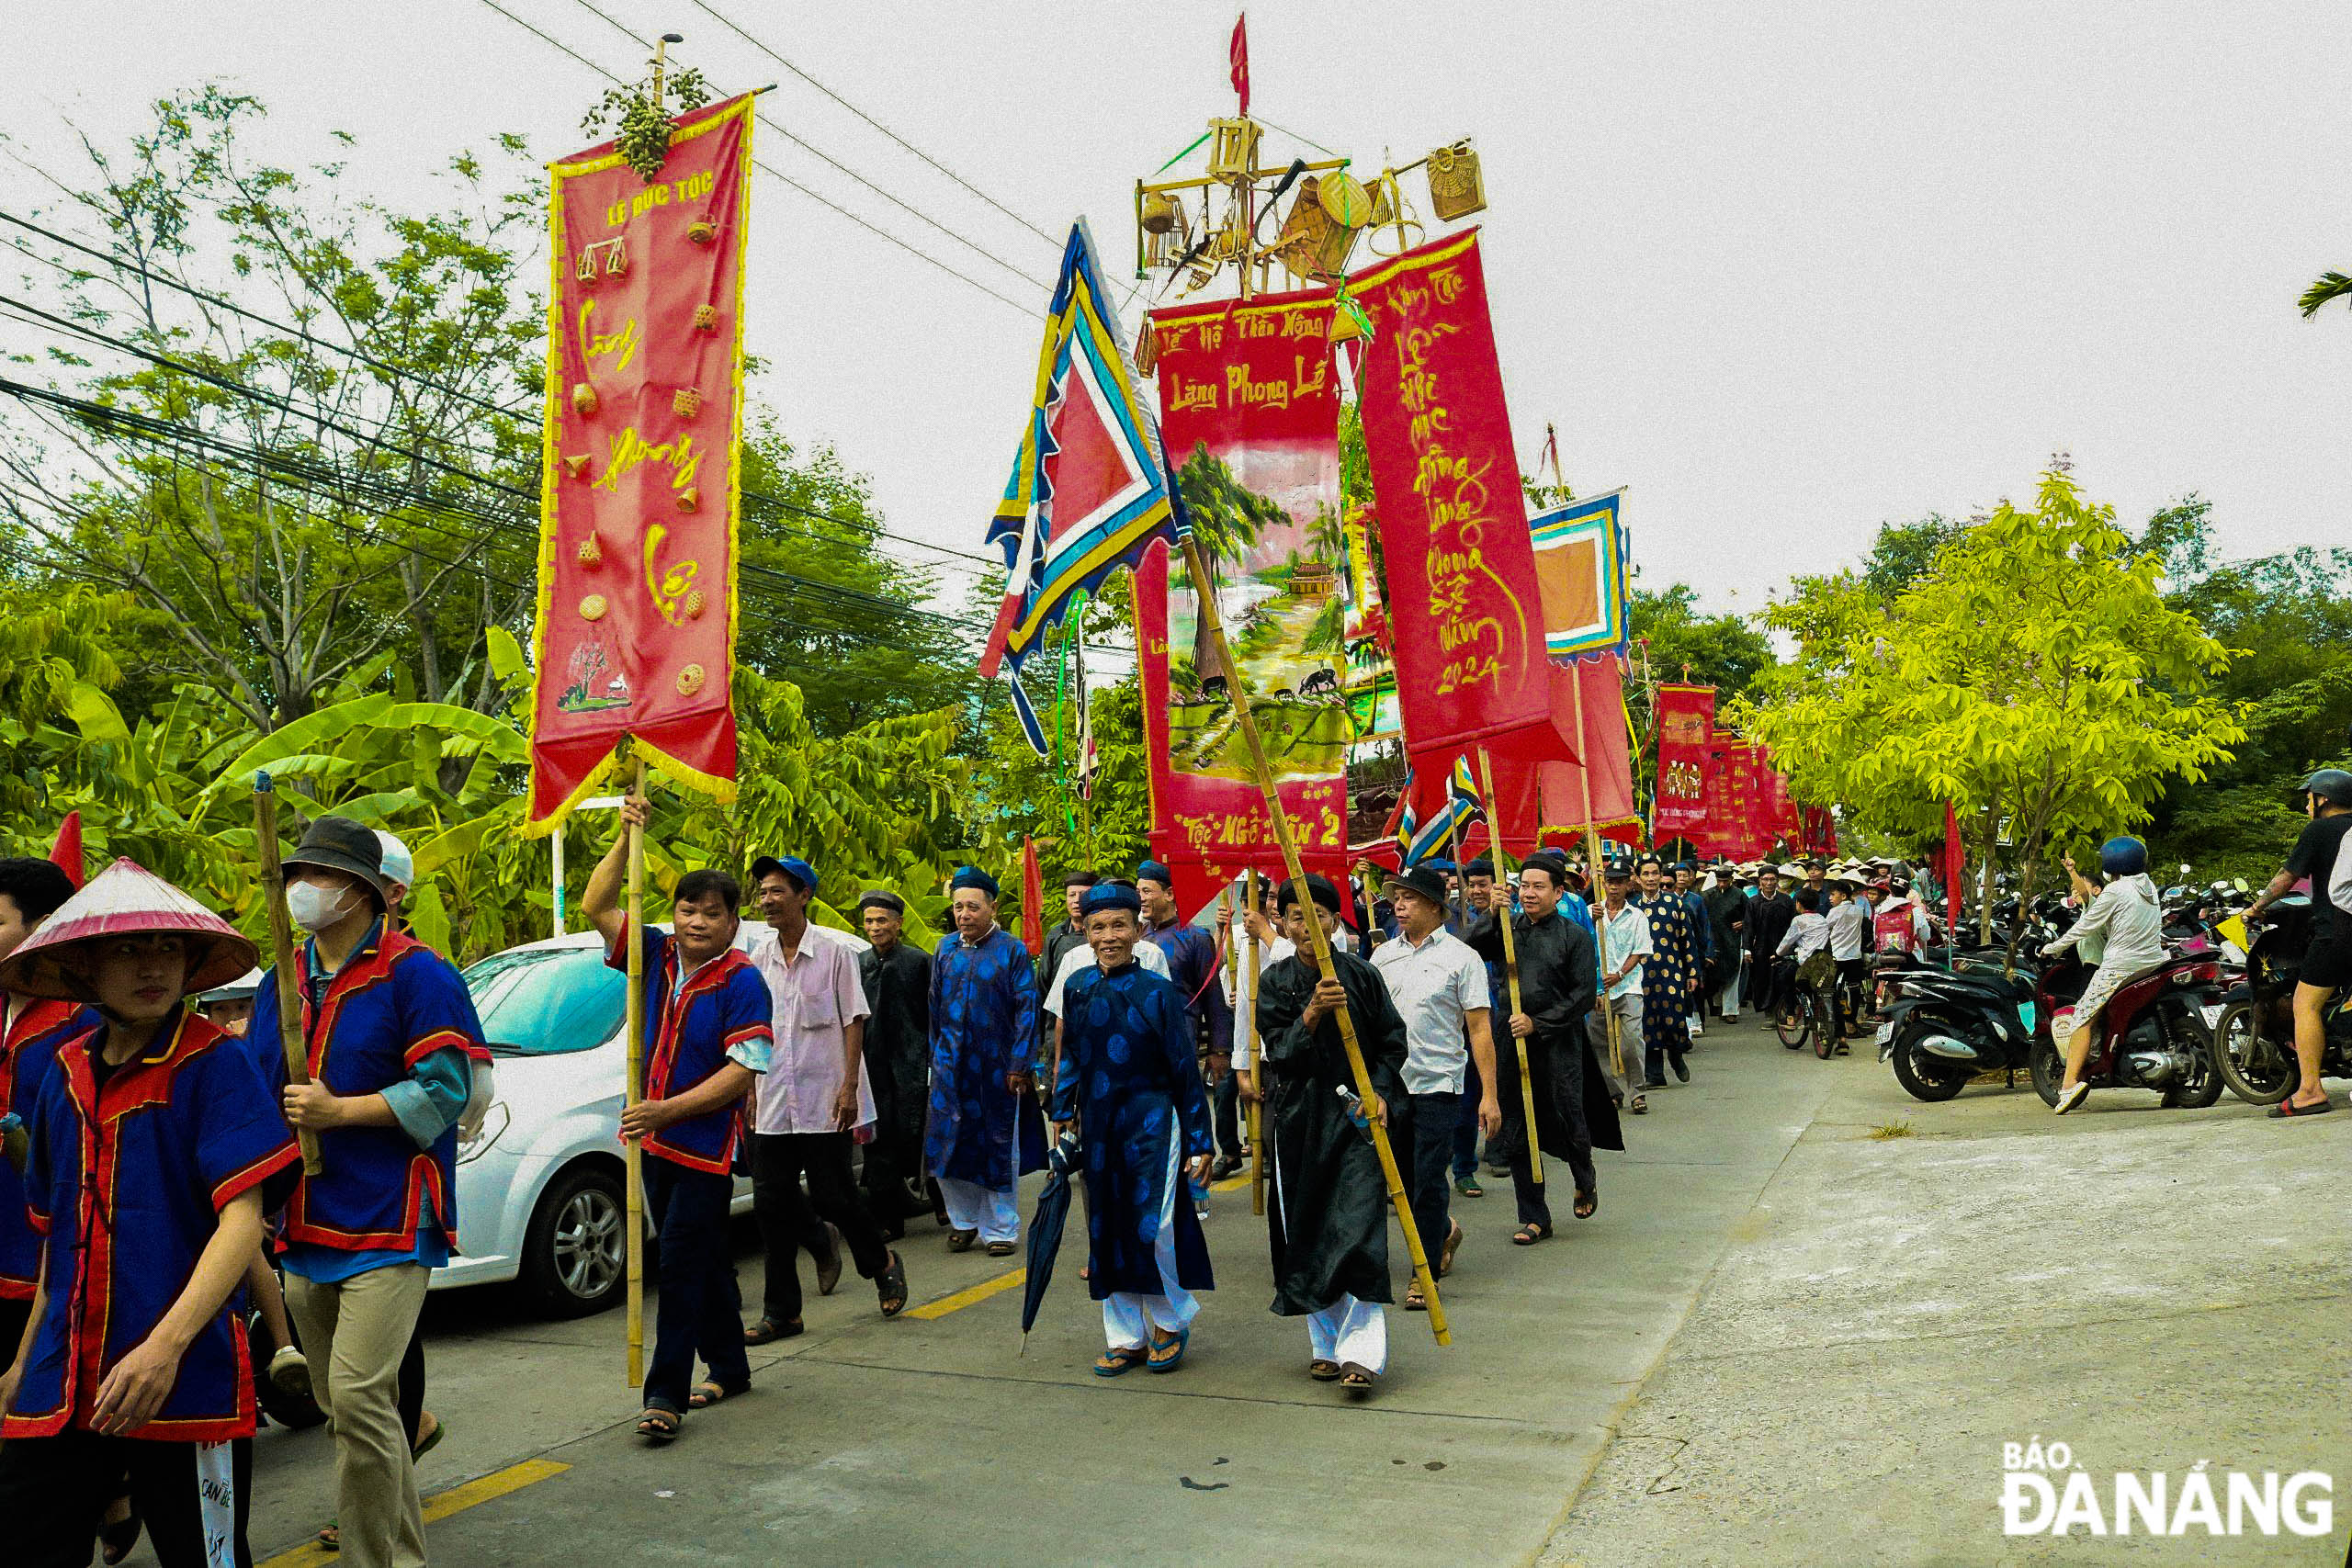 Lễ hội Mục Đồng gắn với Đình Thần Nông (thuộc làng Phong Lệ, xã Hòa Châu) là lễ hội độc đáo, duy nhất trên toàn quốc nhằm tôn vinh giới trẻ chăn trâu. Trước đây, lễ hội tổ chức 3 năm một lần, sau đó là 12 năm một lần; lần cuối tổ chức vào năm 1936.